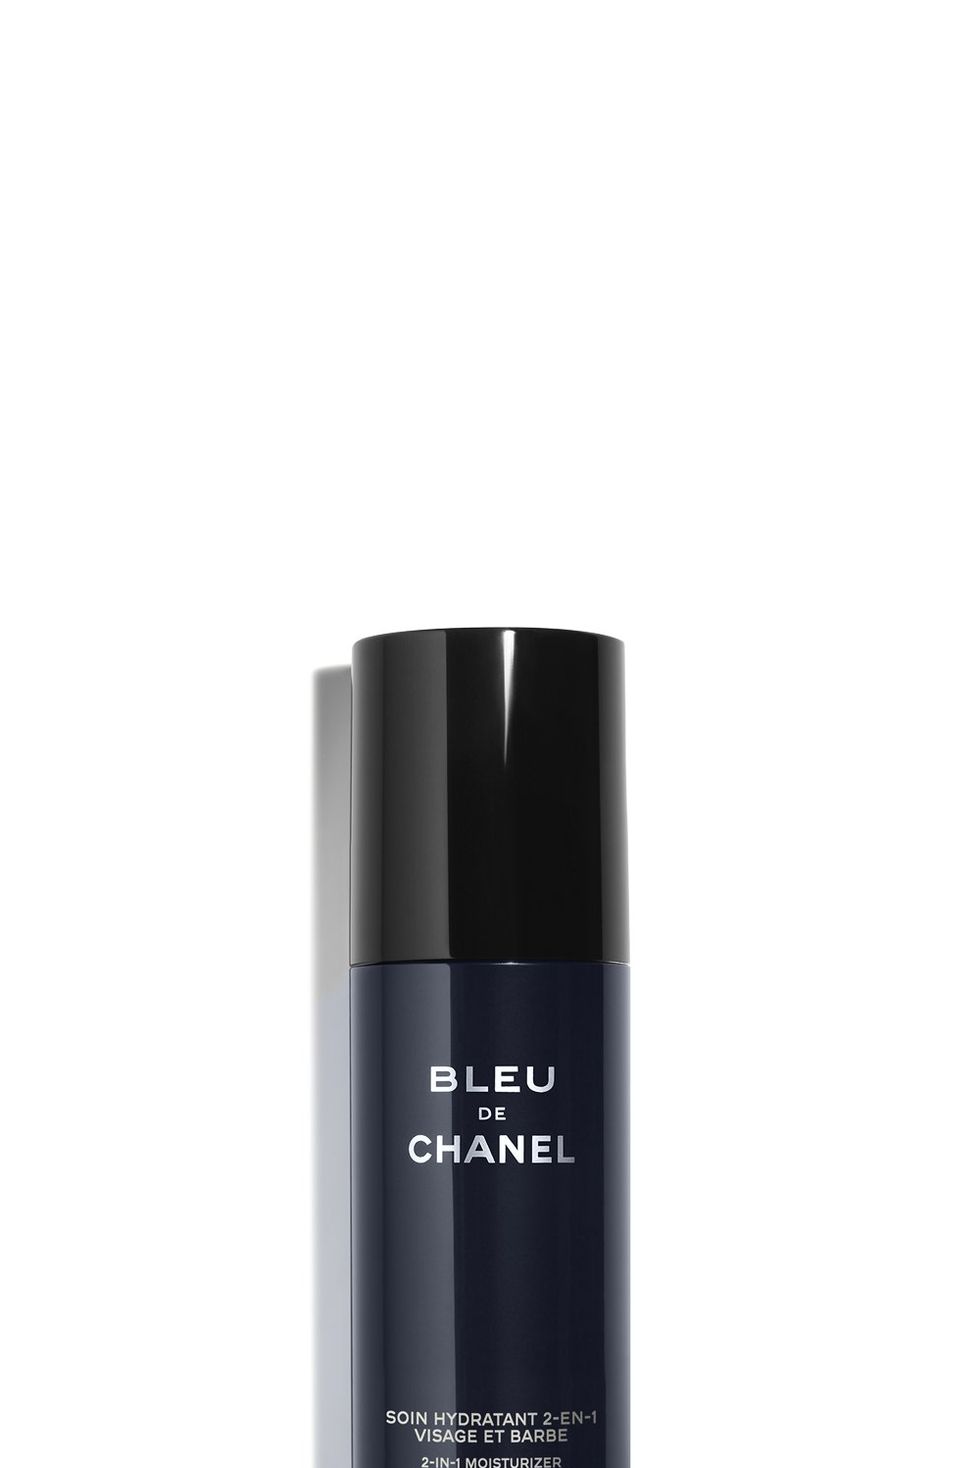 Soin Hydratant 2-en-1 Visage et Barbe Bleu de Chanel